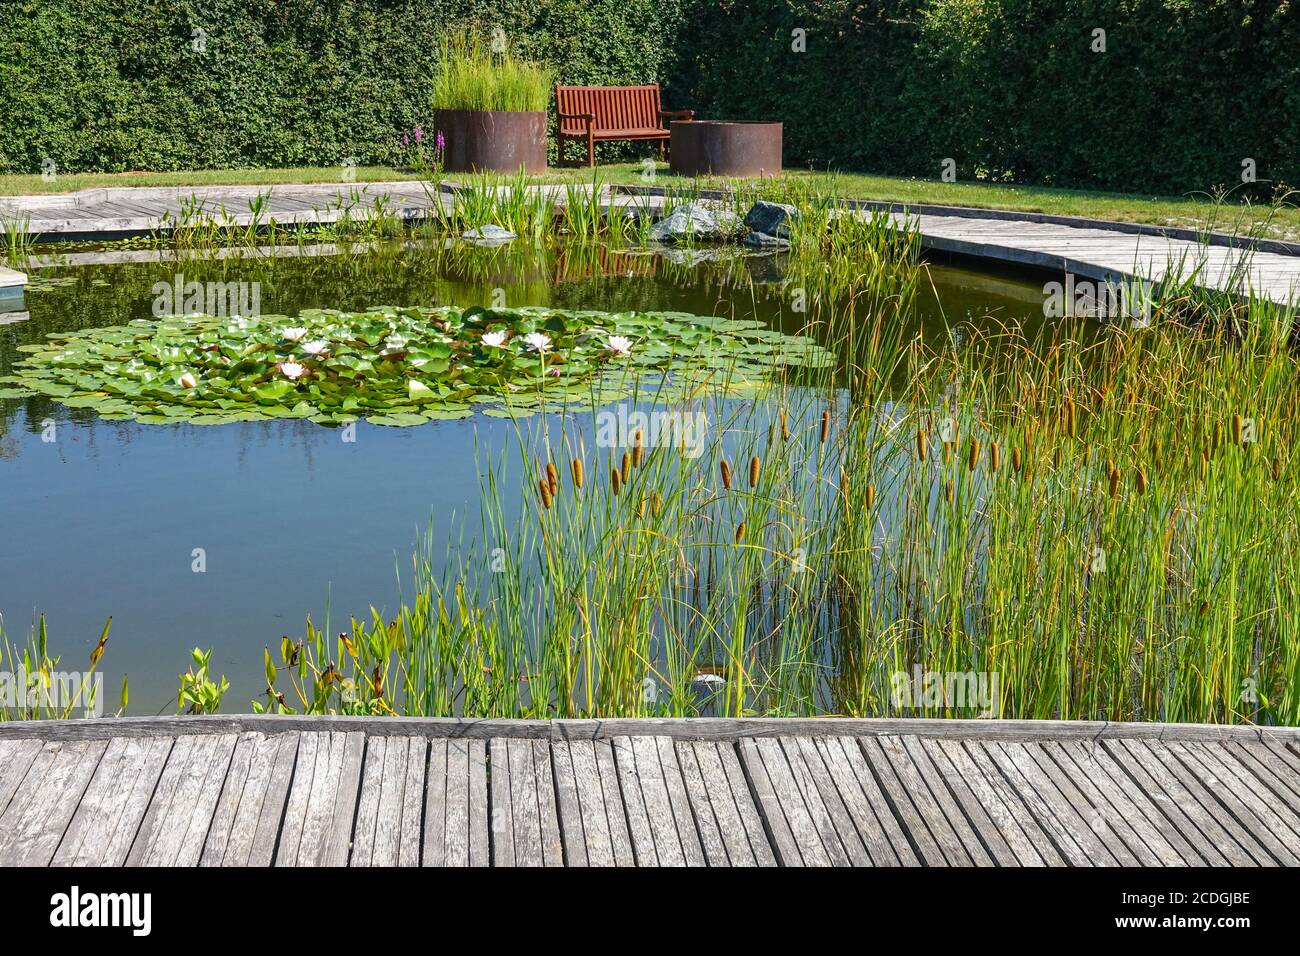 Una zona de descanso y tranquilidad, plantas acuáticas creciendo alrededor del estanque del jardín, anillados decorativos de caña de buey, banco de madera camino Foto de stock